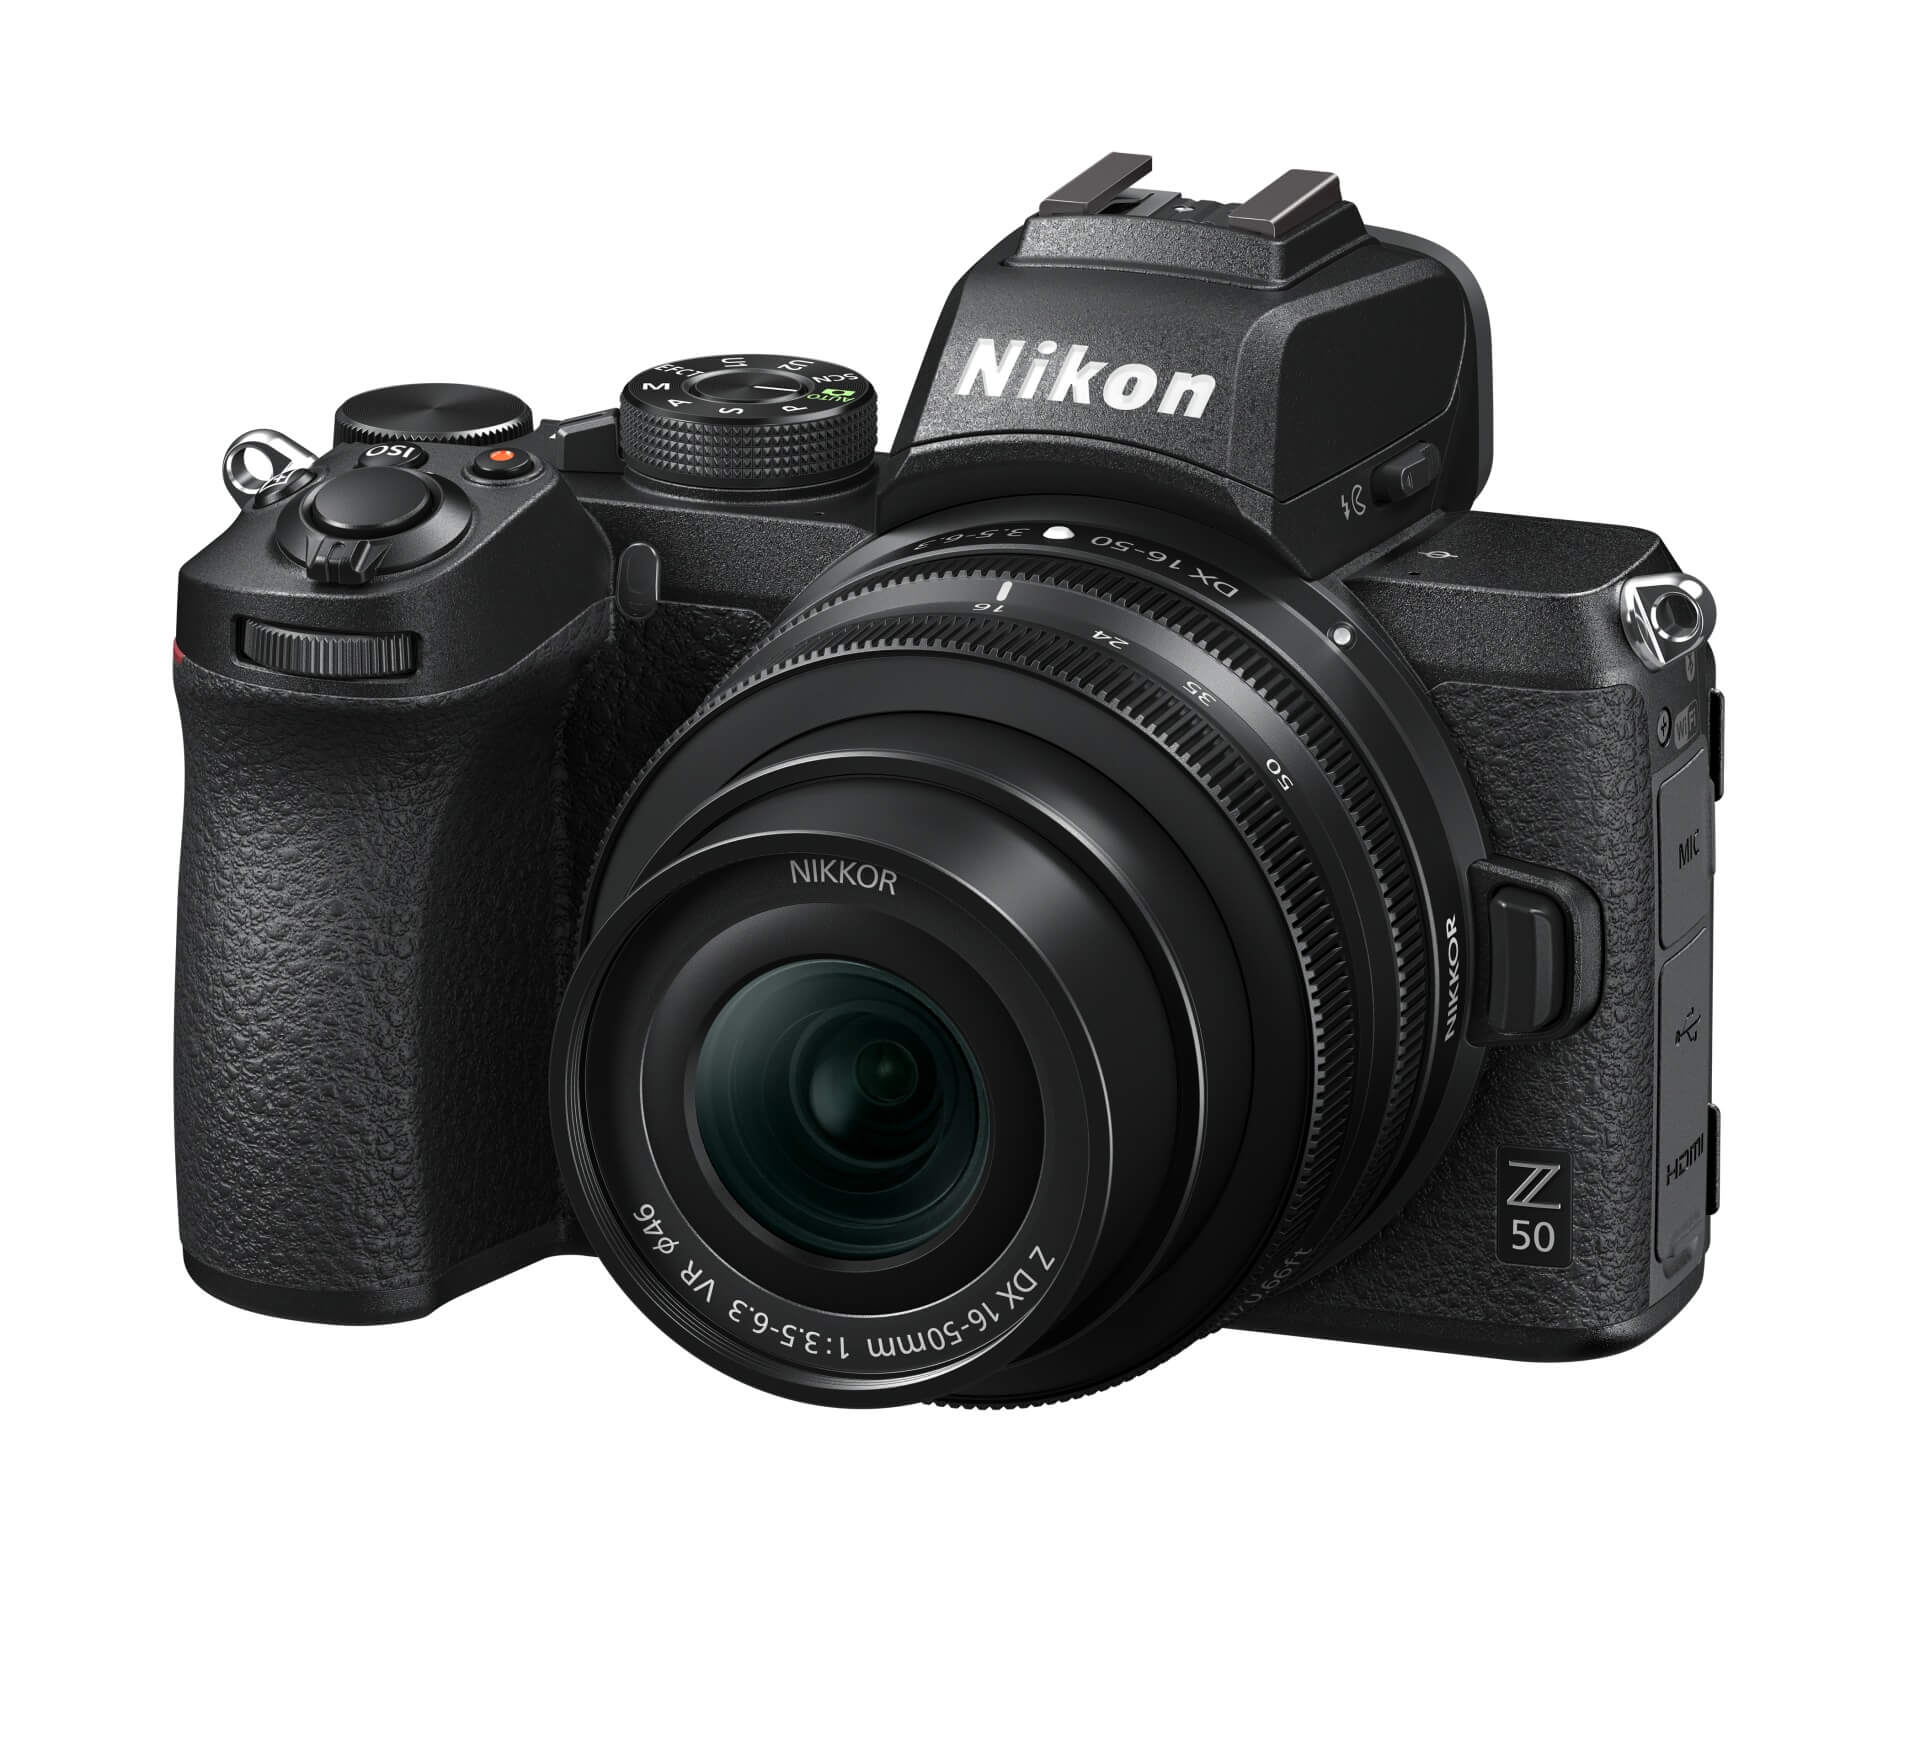 I ten nejlevnější mirrorless Nikonu, model Nikon Z 50 s kitovým objektivem NIKKOR Z DX 16–50 mm f/3,5–6,3 VR, přináší výrazné zvýšení obrazové kvality, o funkcích a dalších užitných vlastnostech ani nemluvě